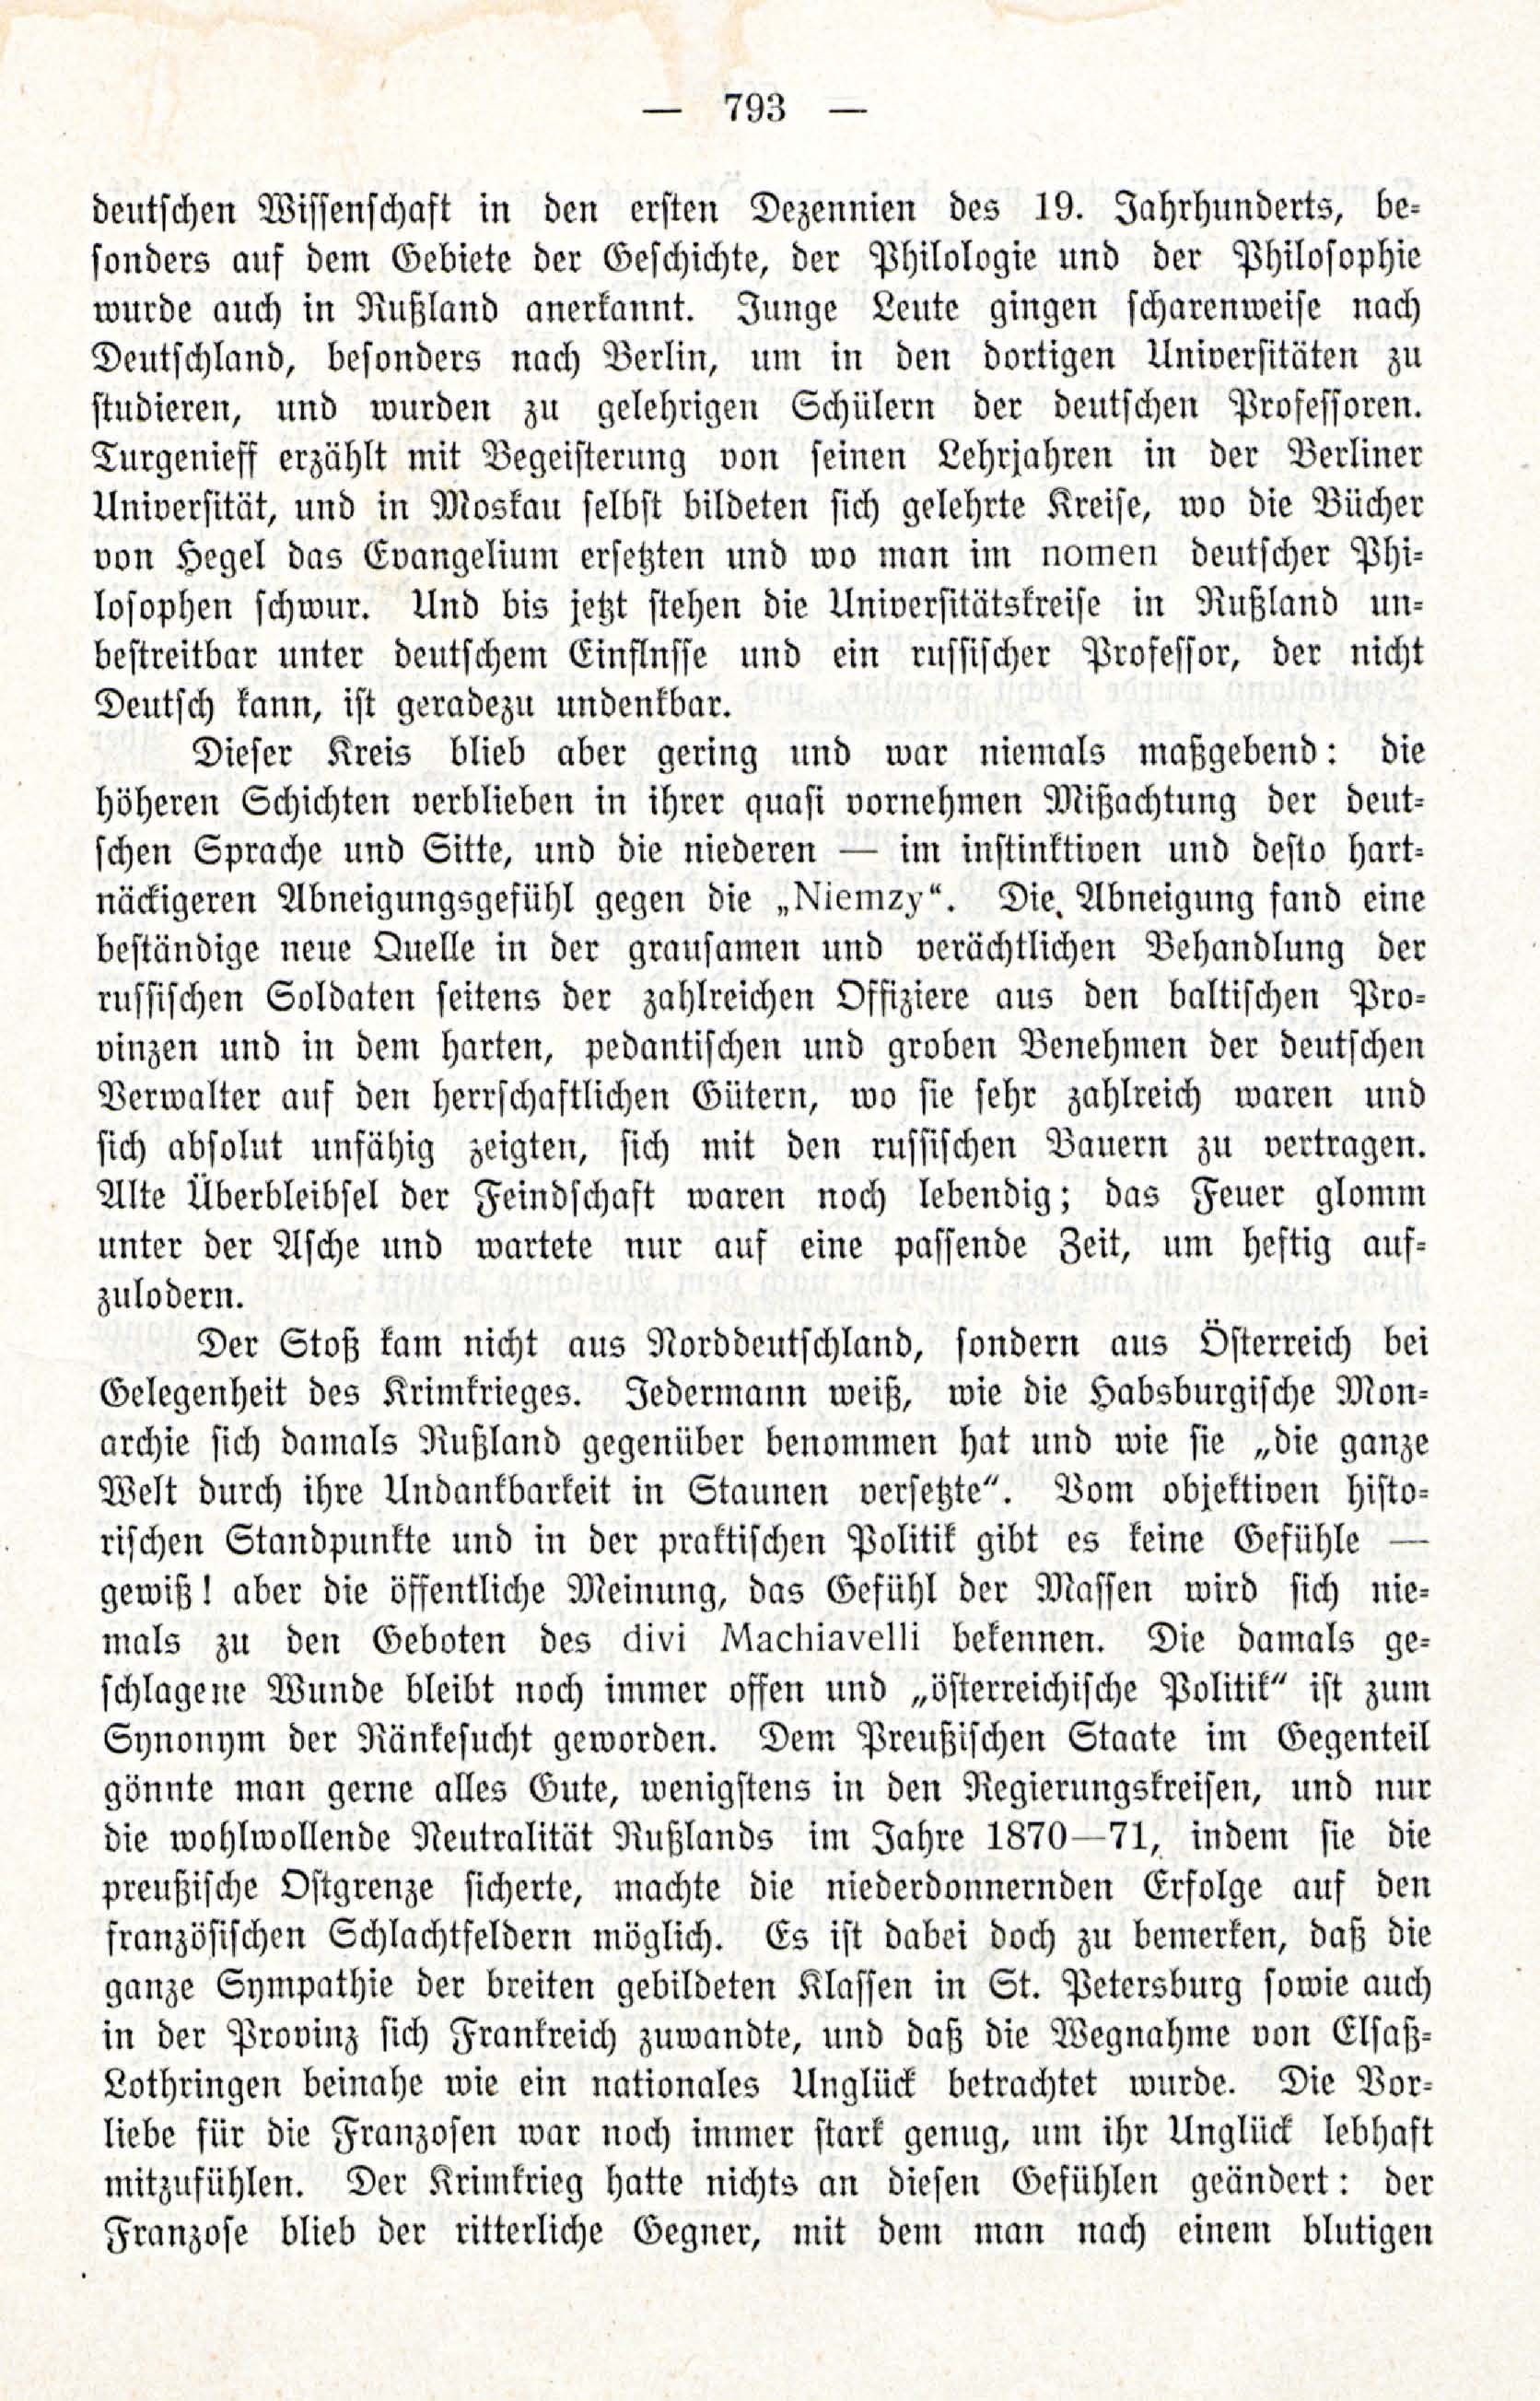 Deutsche Monatsschrift für Russland [3/12] (1914) | 9. (793) Main body of text